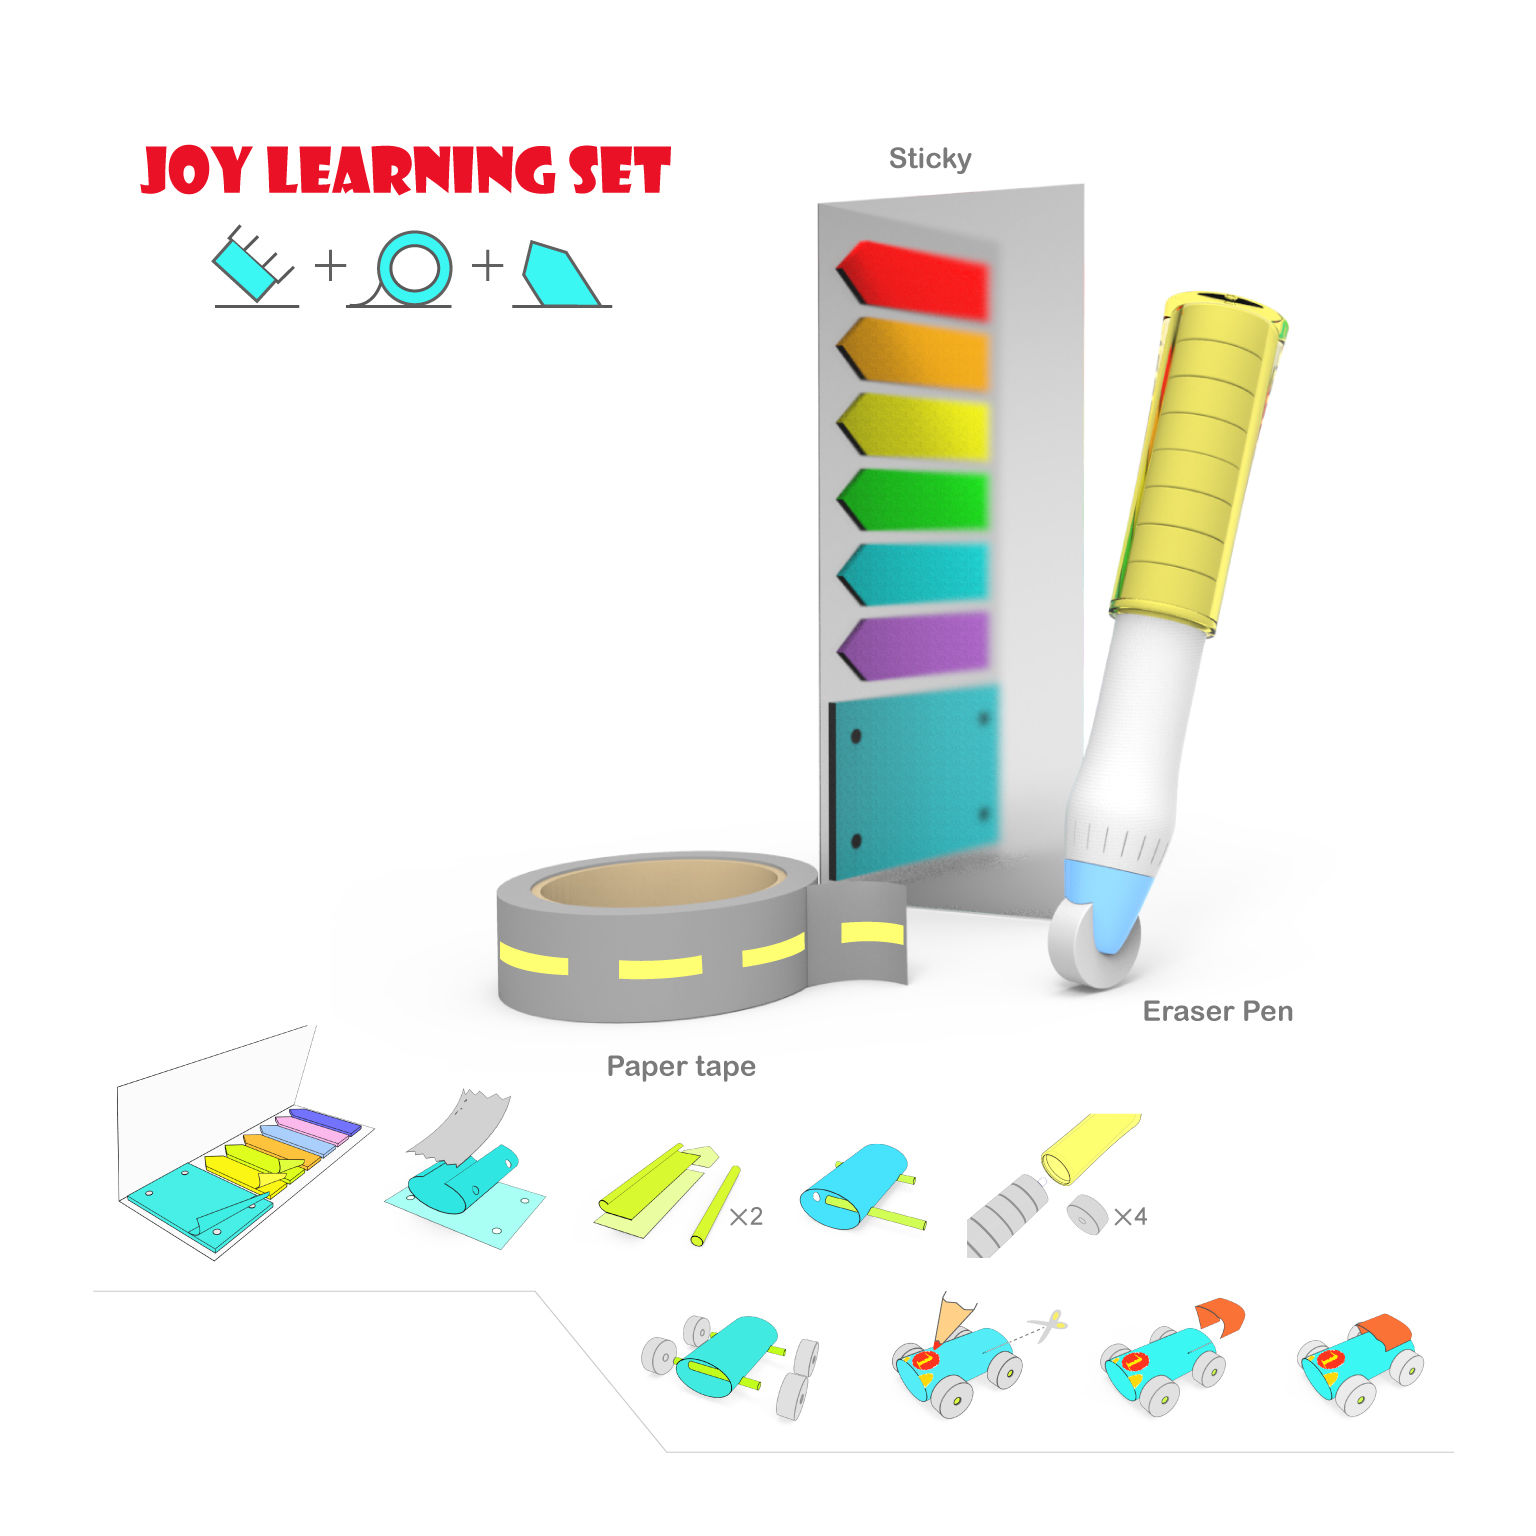 Joy Learning Set